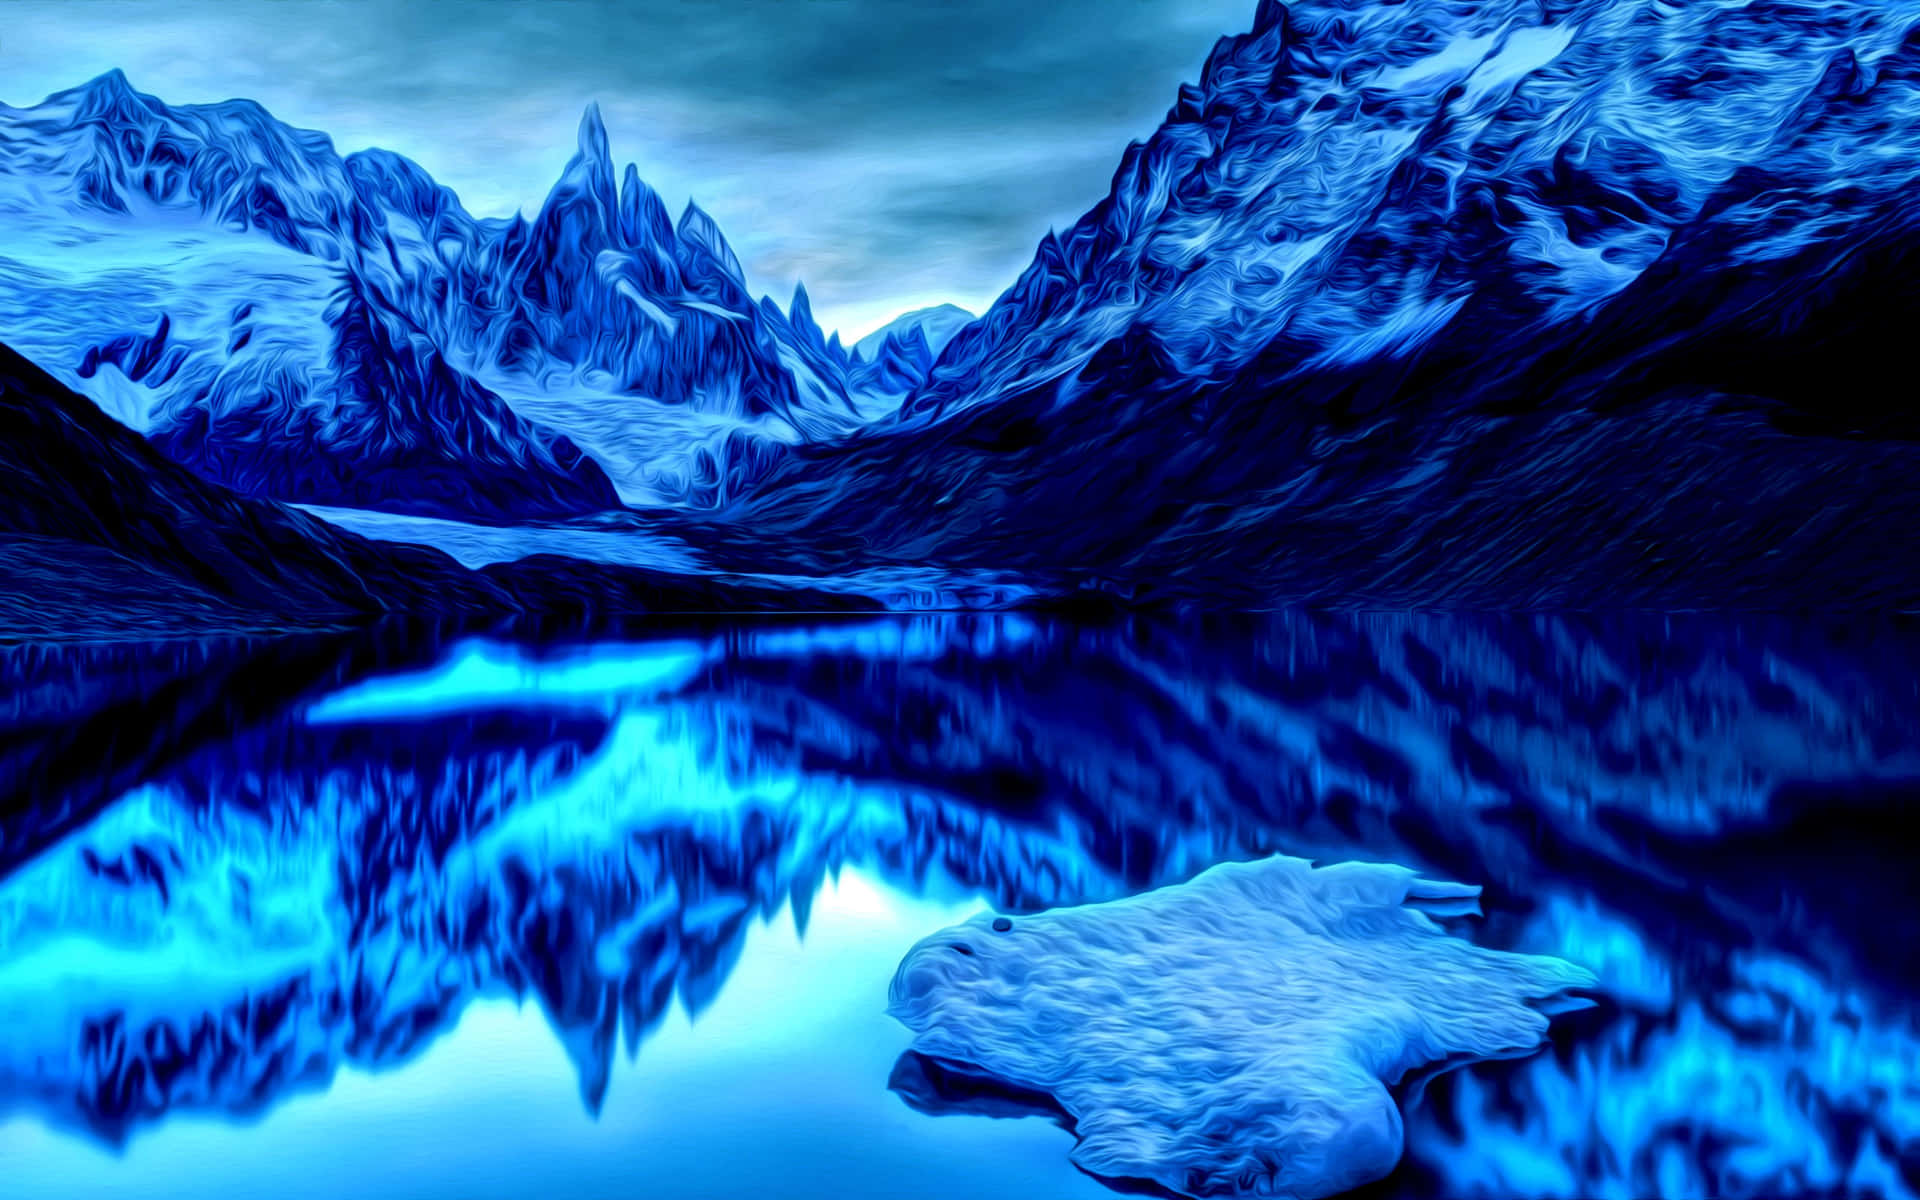 Breathe In the Beauty of a Majestic Mountain Scene Wallpaper